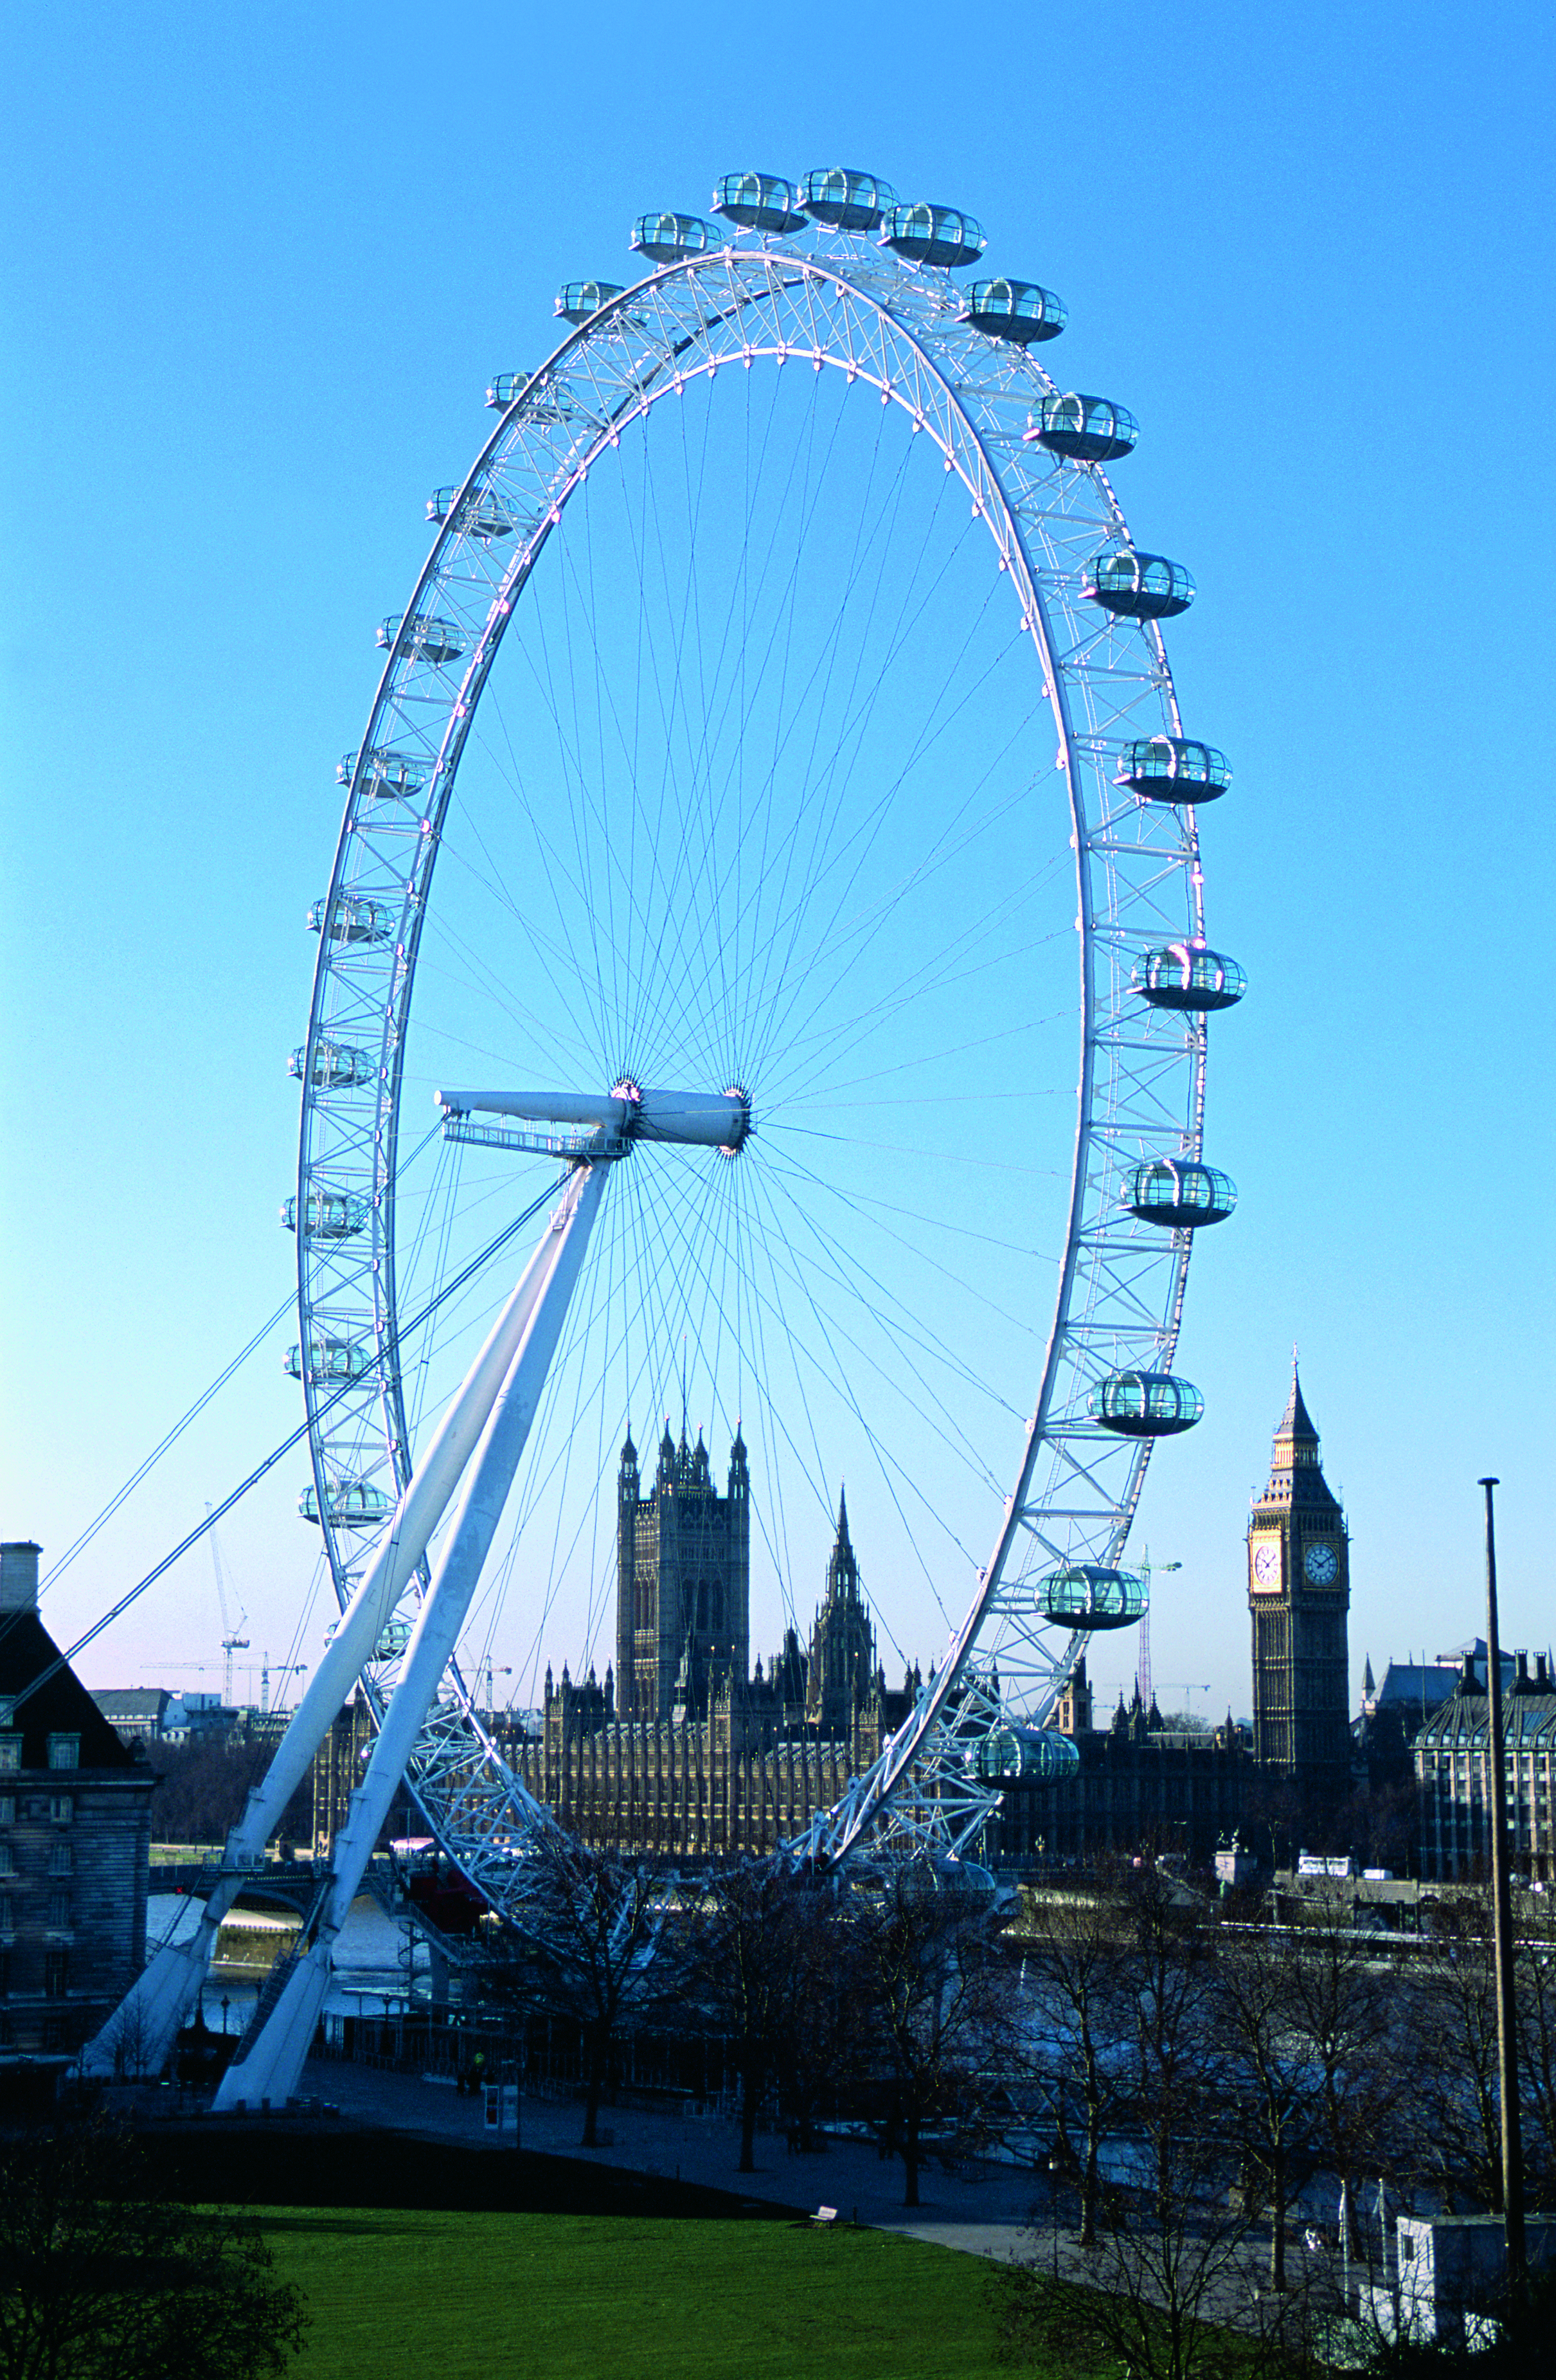 London Eye portrait view